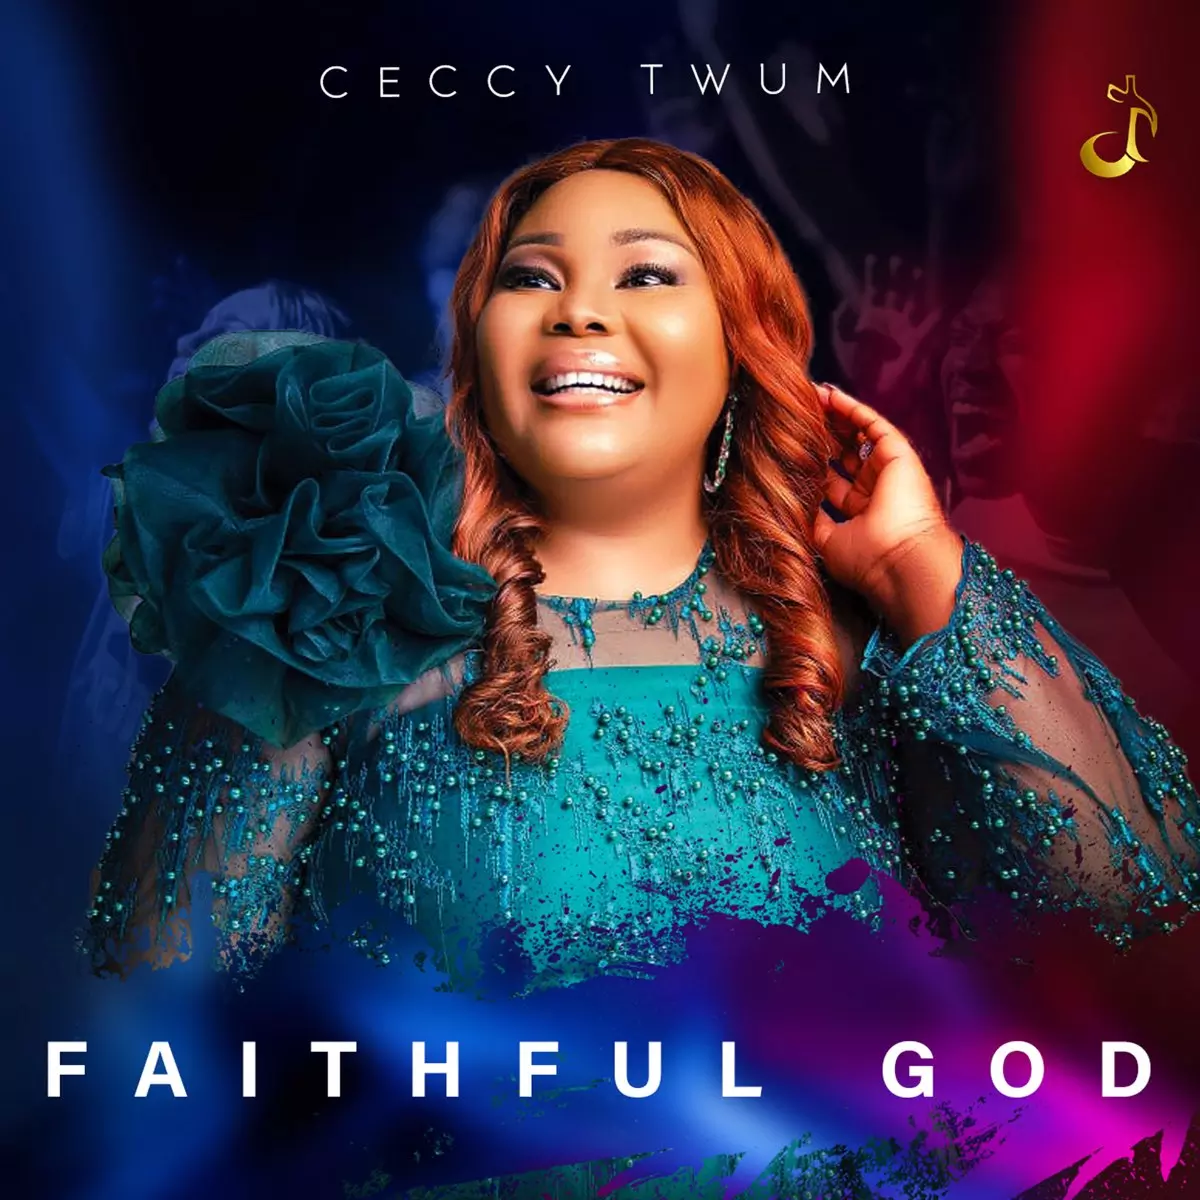 Faithful God by Ceccy Twum on Apple Music